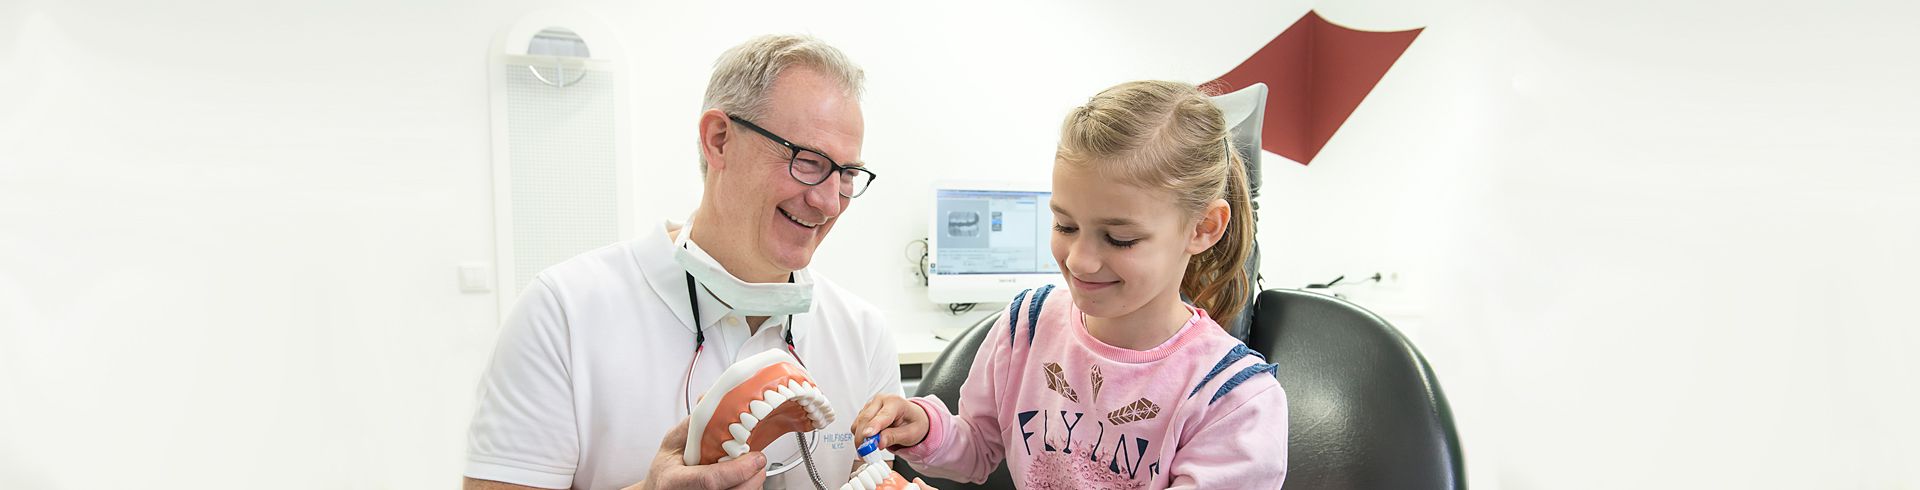 Praxis für Zahnheilkunde & Implantologie Dr. Stobias - Kinderzahnheilkunde